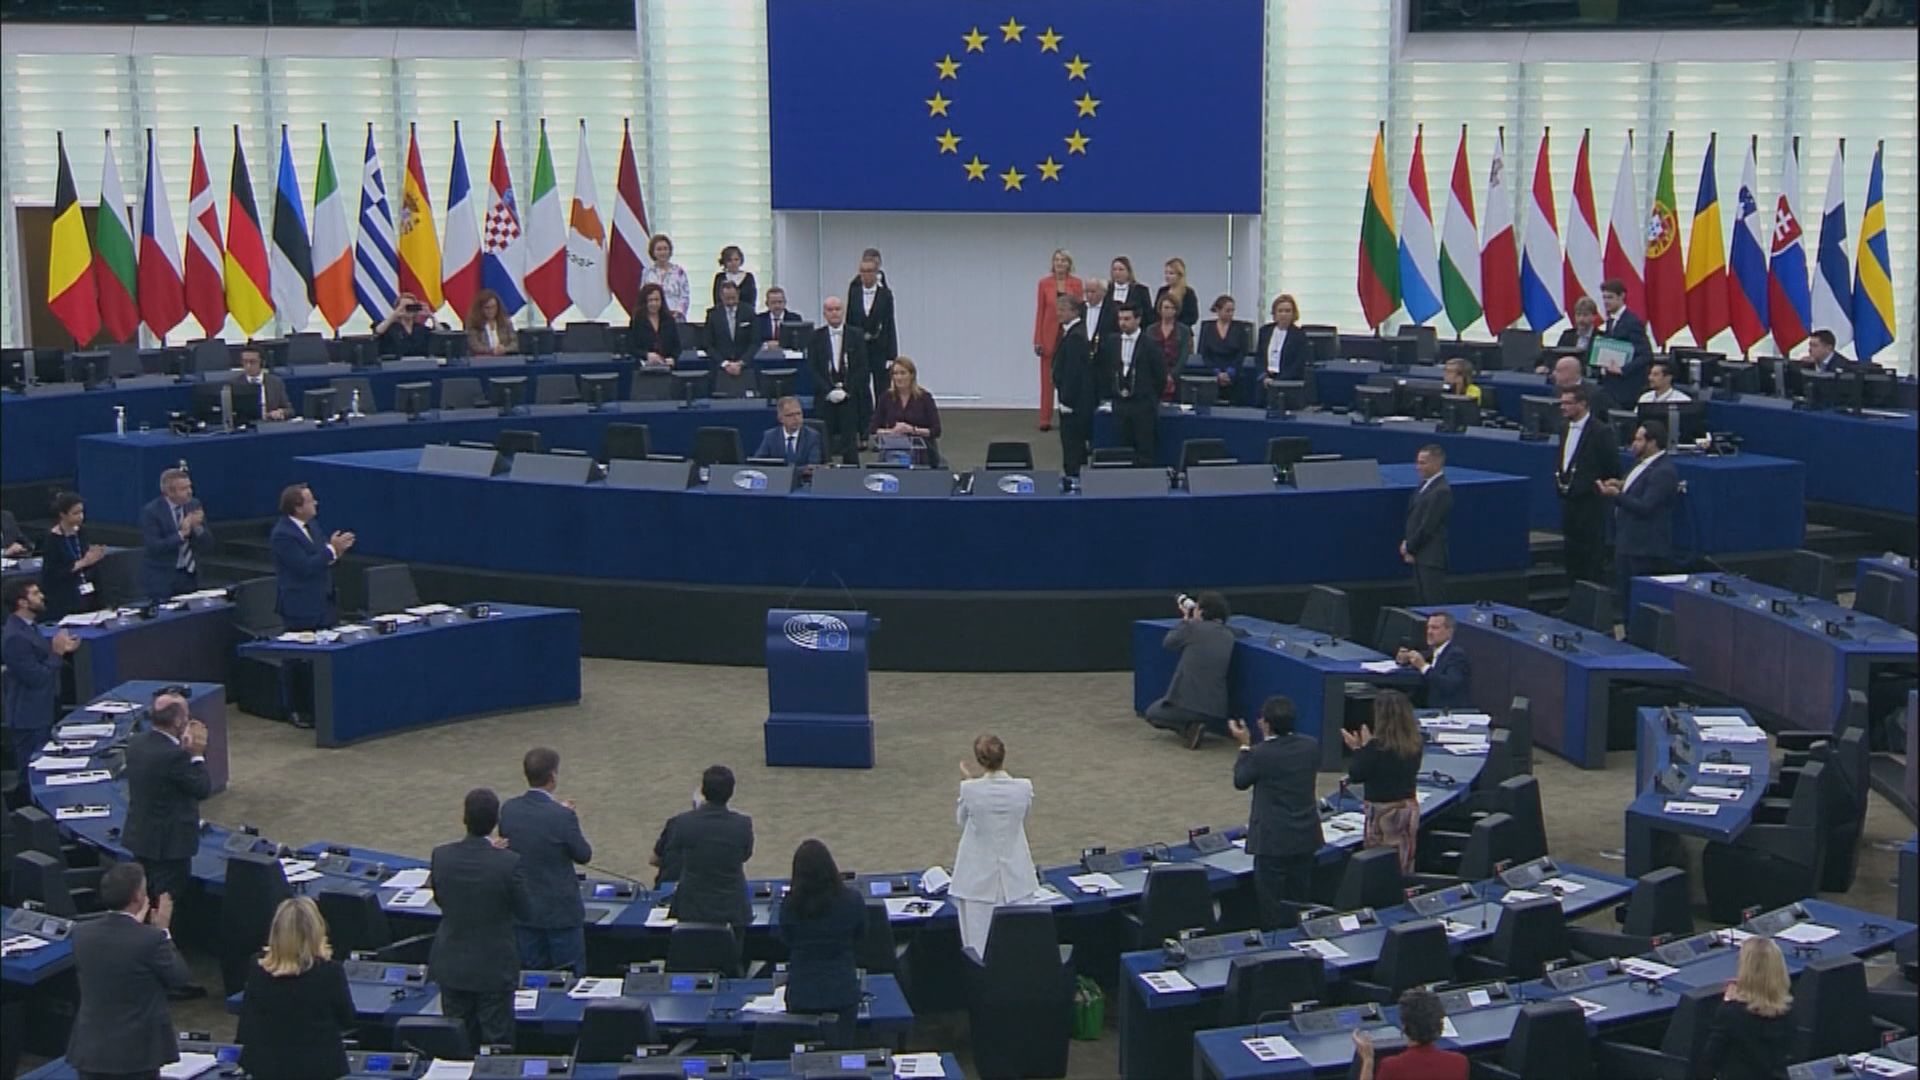 烏克蘭人民獲歐洲議會頒發薩哈羅夫思想自由獎